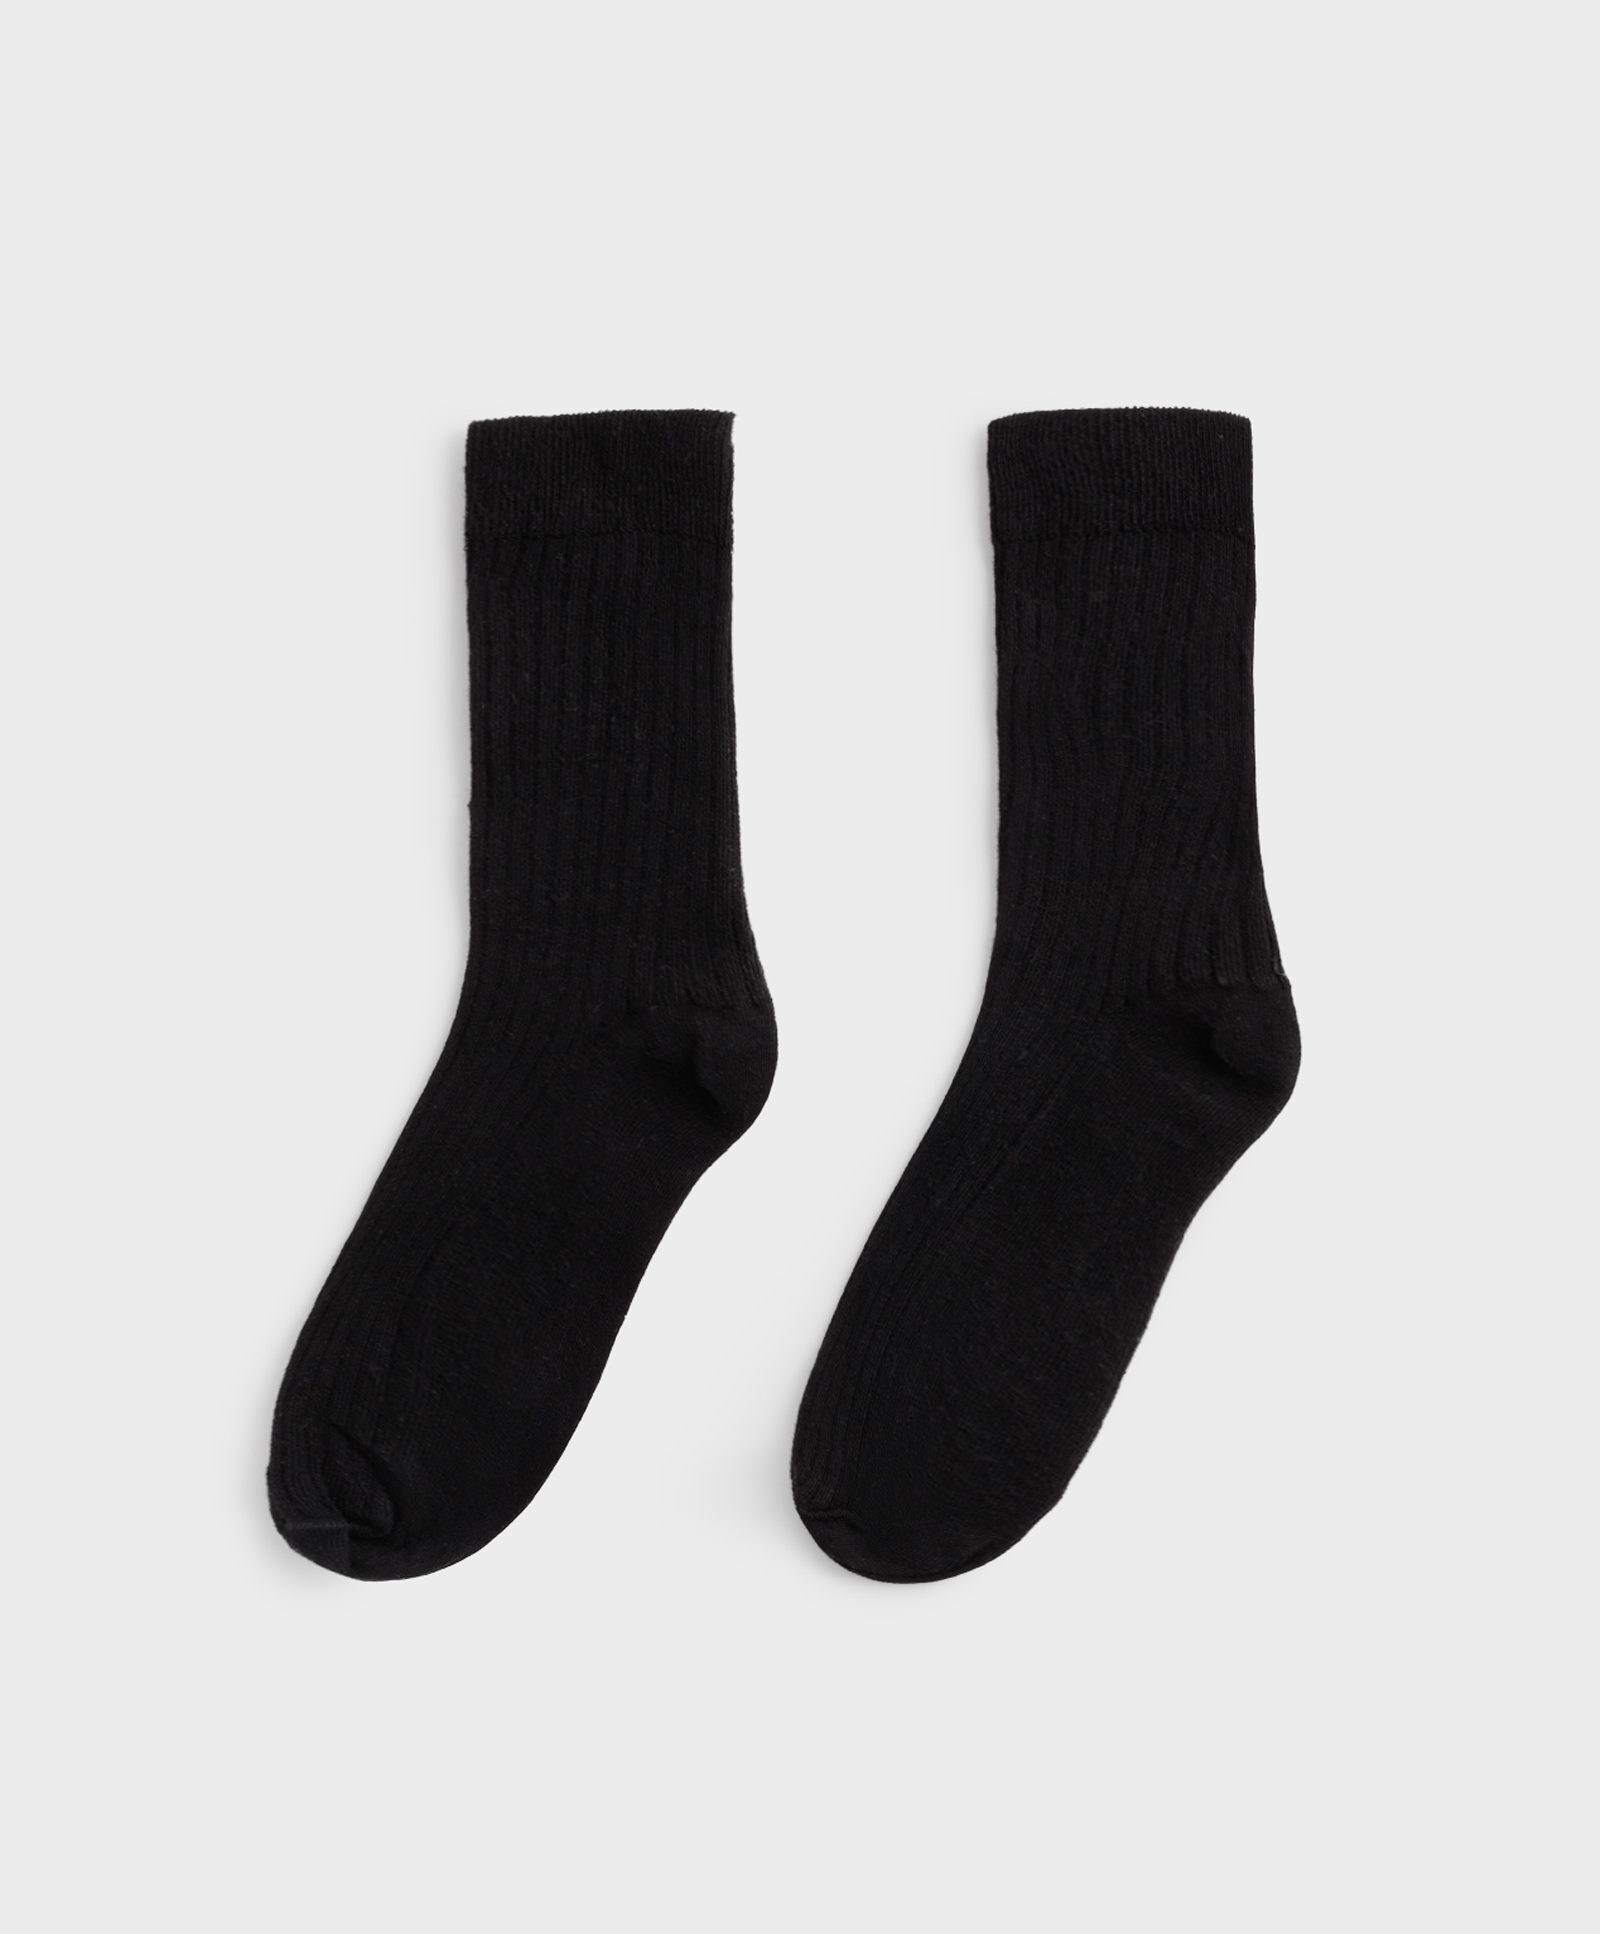 Rebraste pamučne čarape srednje dužine